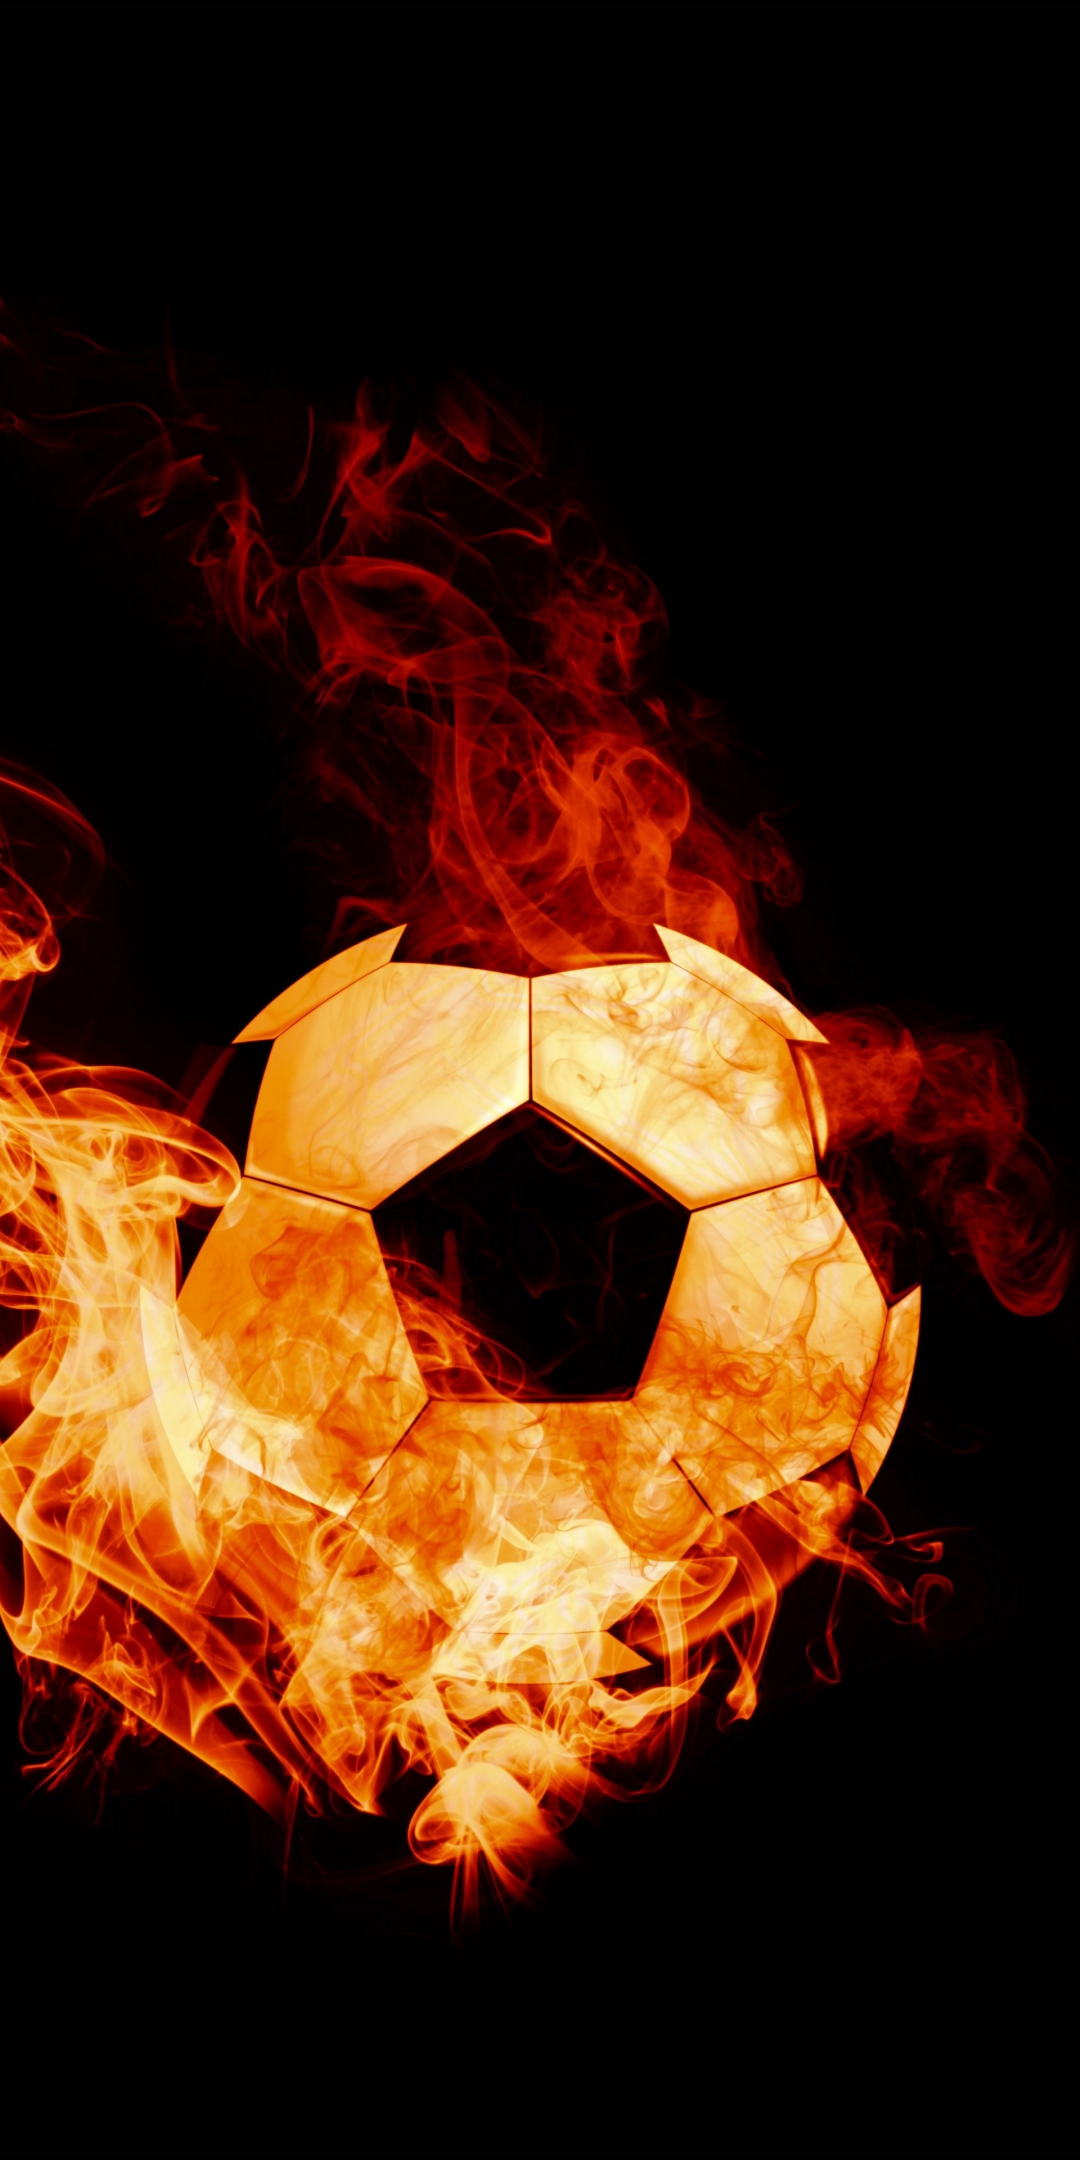 Fire ball, sports, football, photoshop, 1080x2160 wallpaper